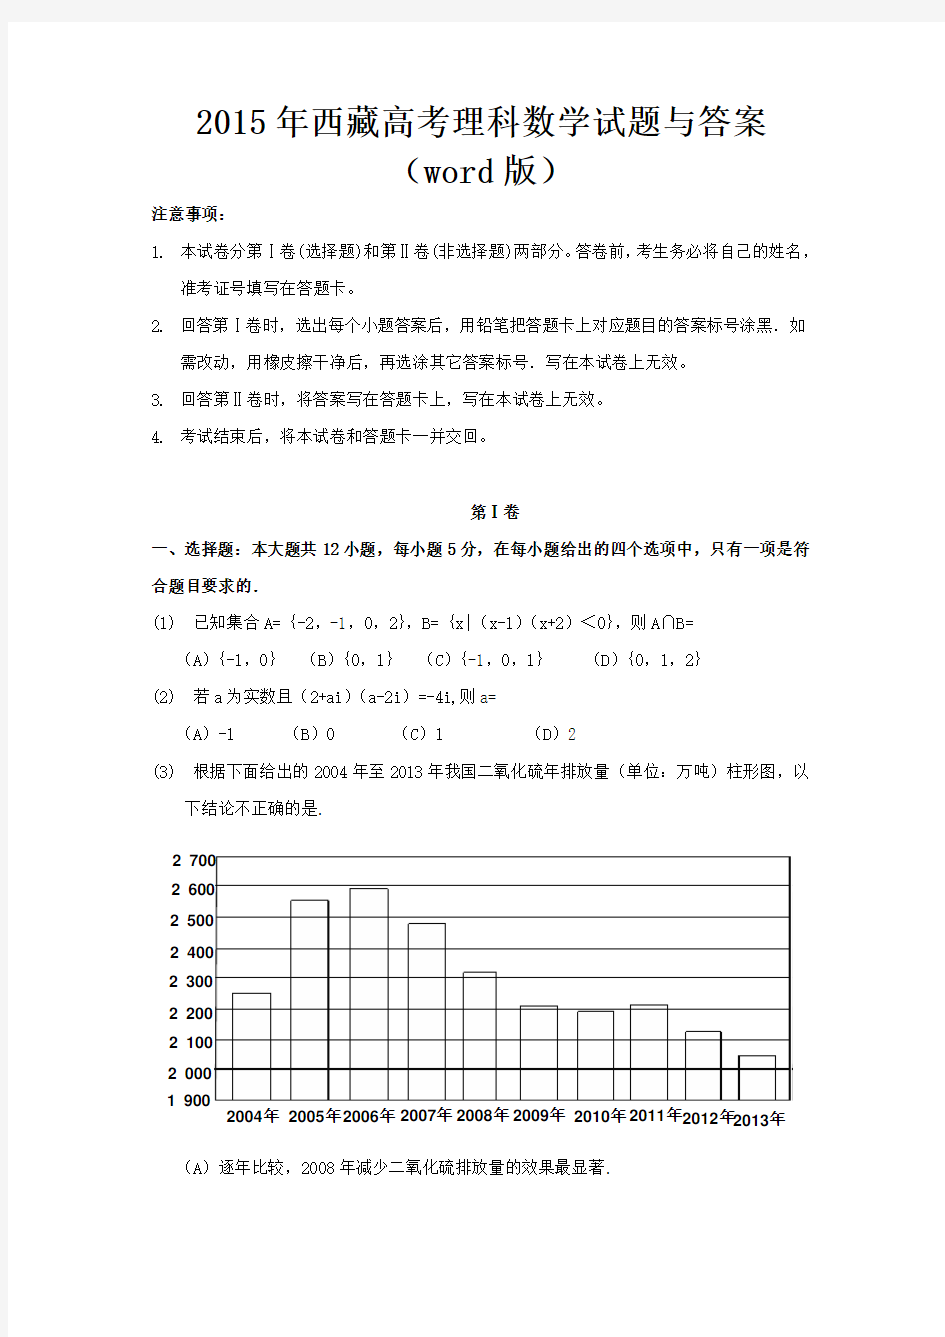 2015年西藏高考理科数学试题与答案(word版)